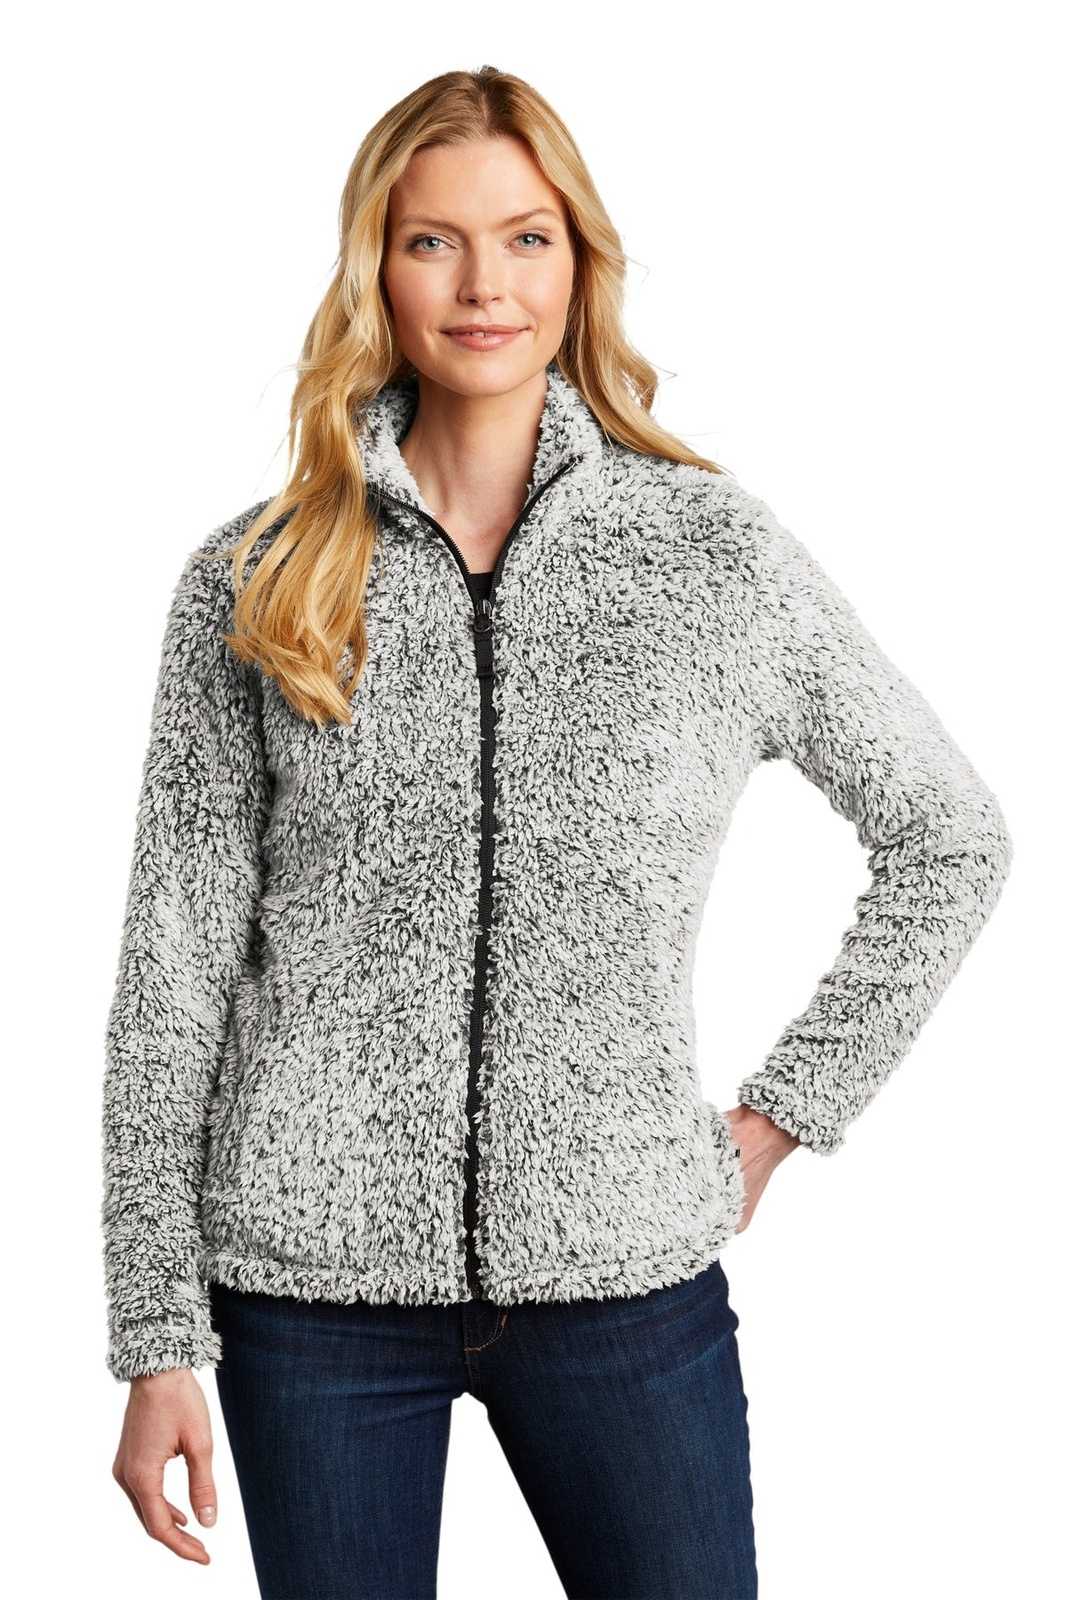 Port Authority L131 Ladies Cozy Fleece Jacket - Gray Heather - HIT a Double - 1